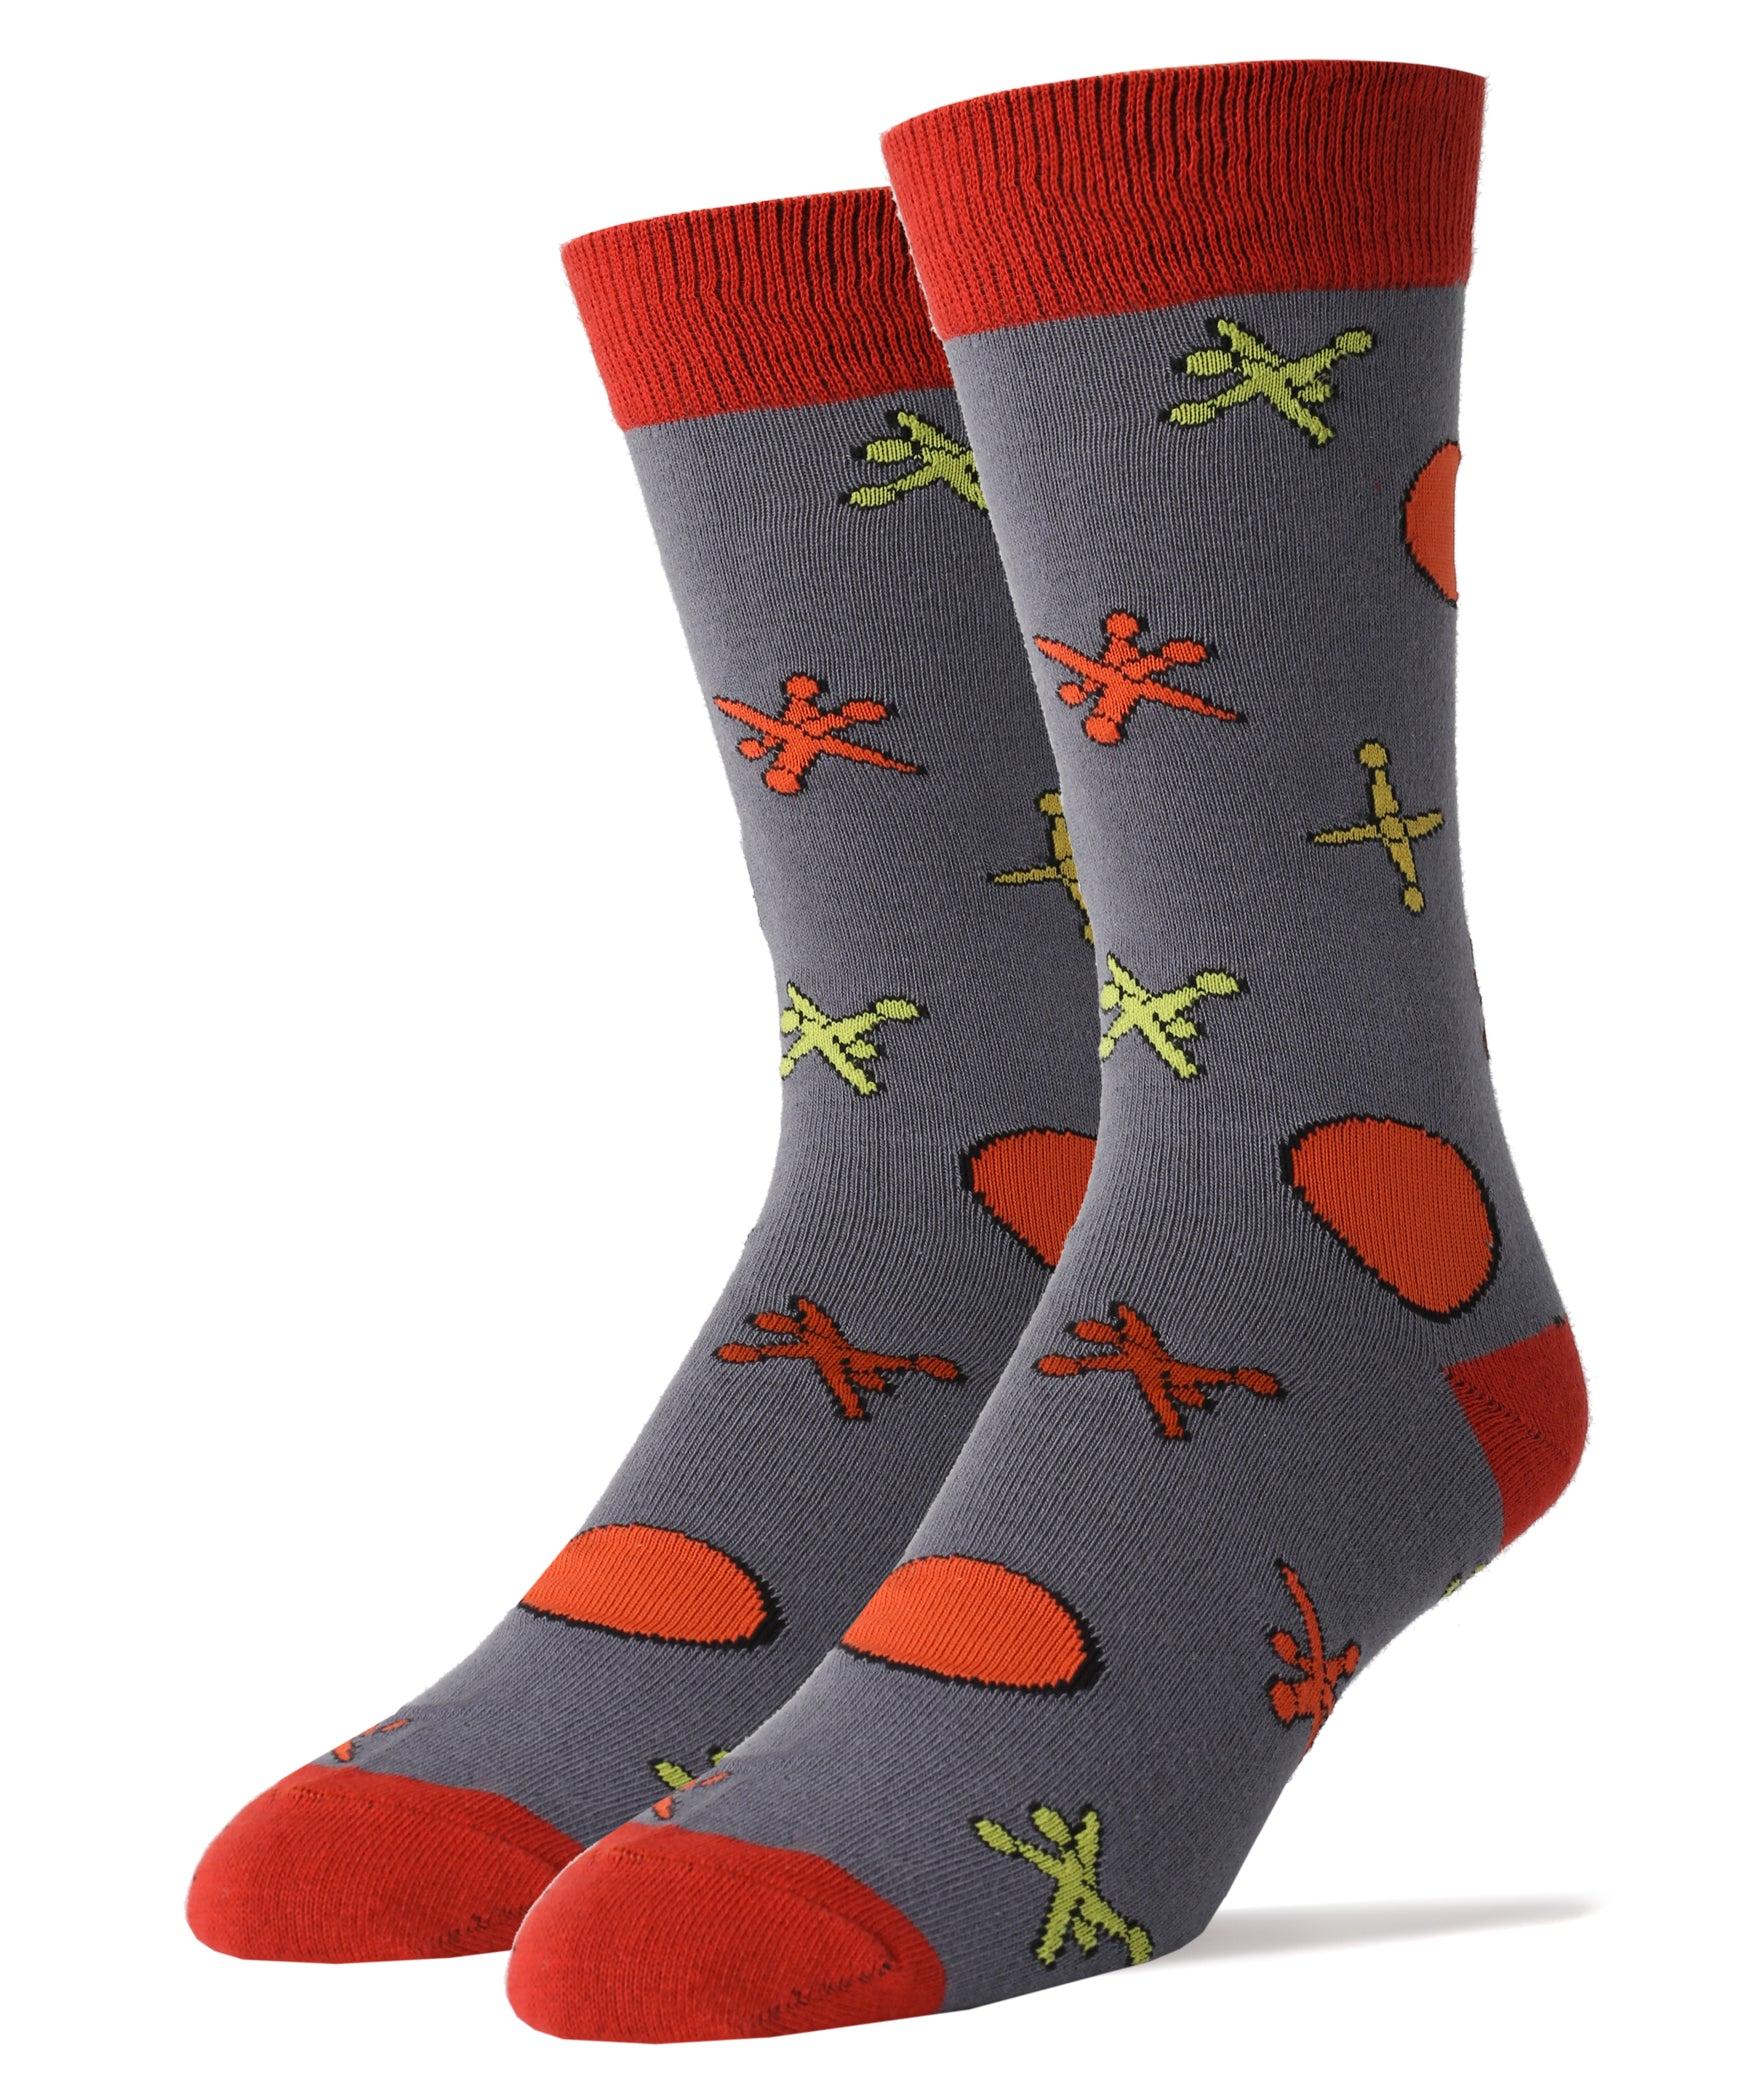 Jacks Socks | Novelty Crew Socks For Men